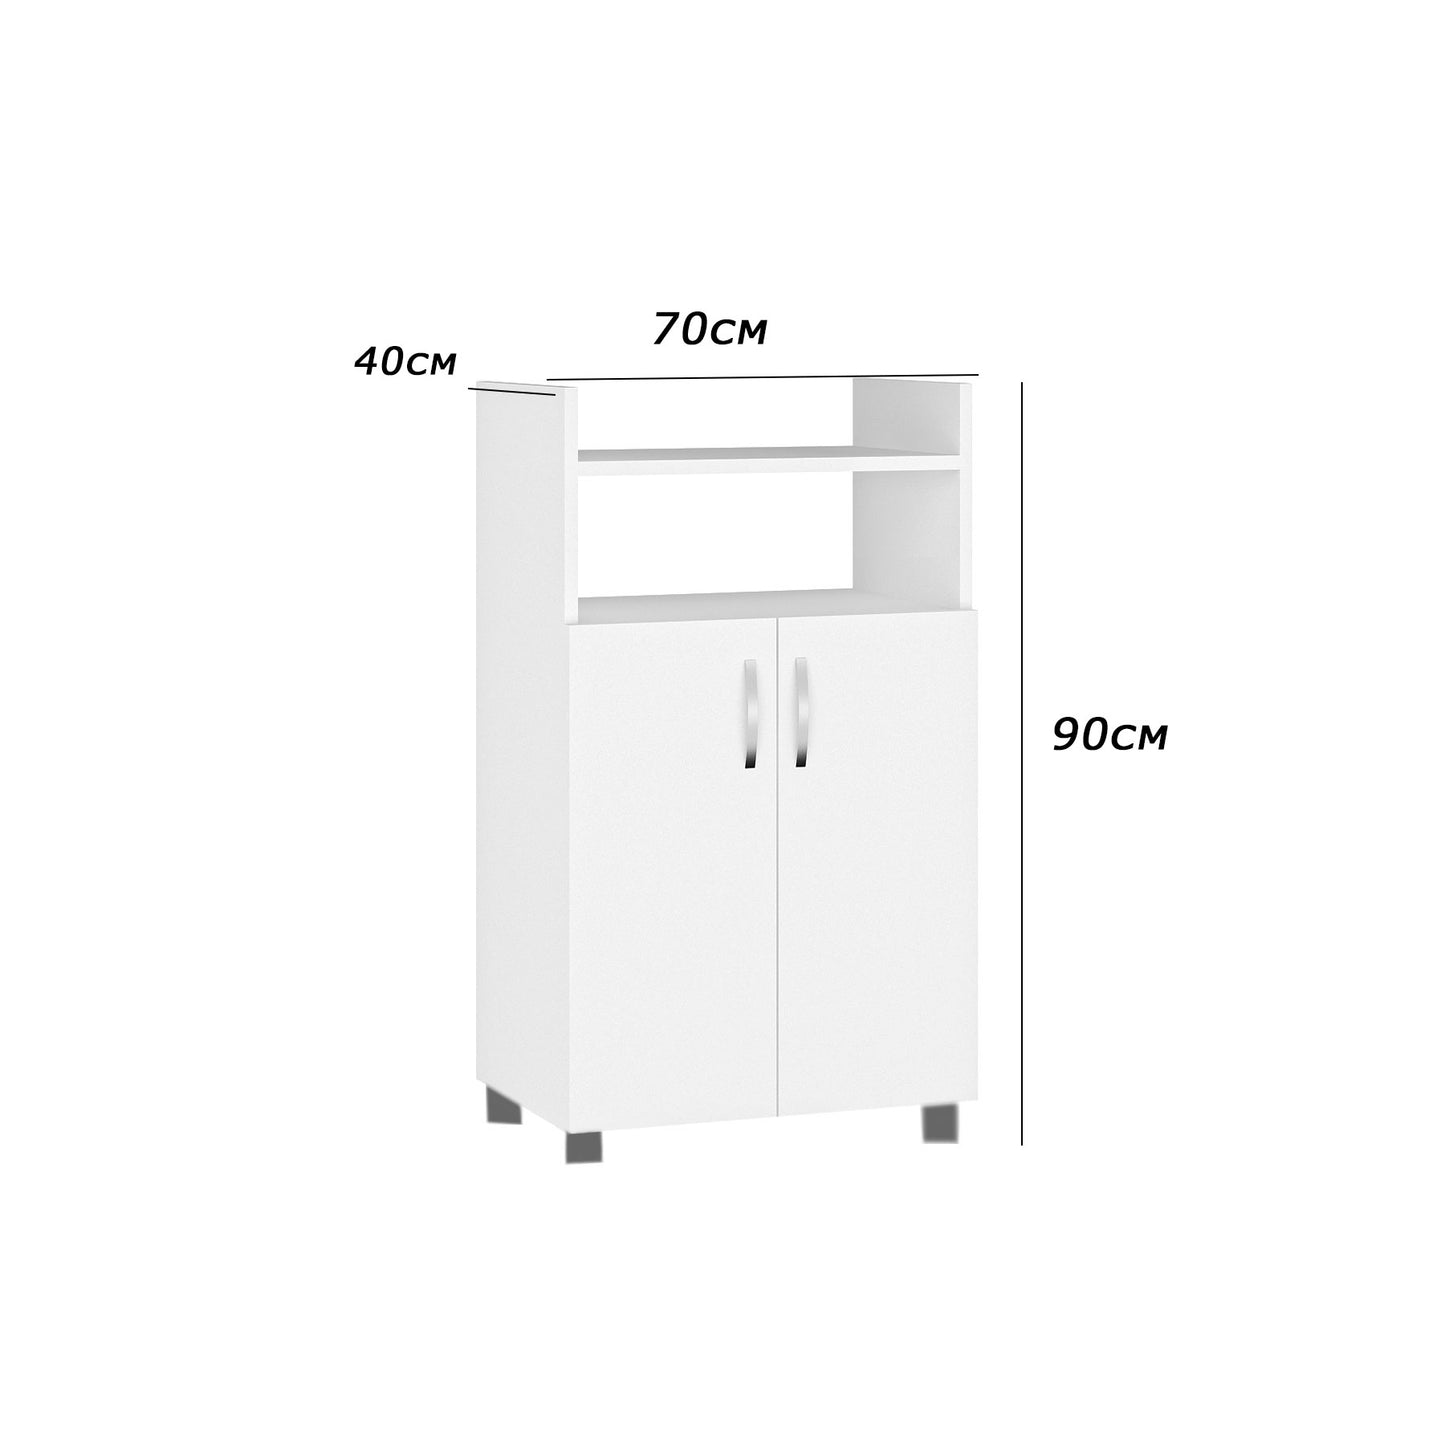 وحدة تخزين مطبخ 90×70سم- FAN57